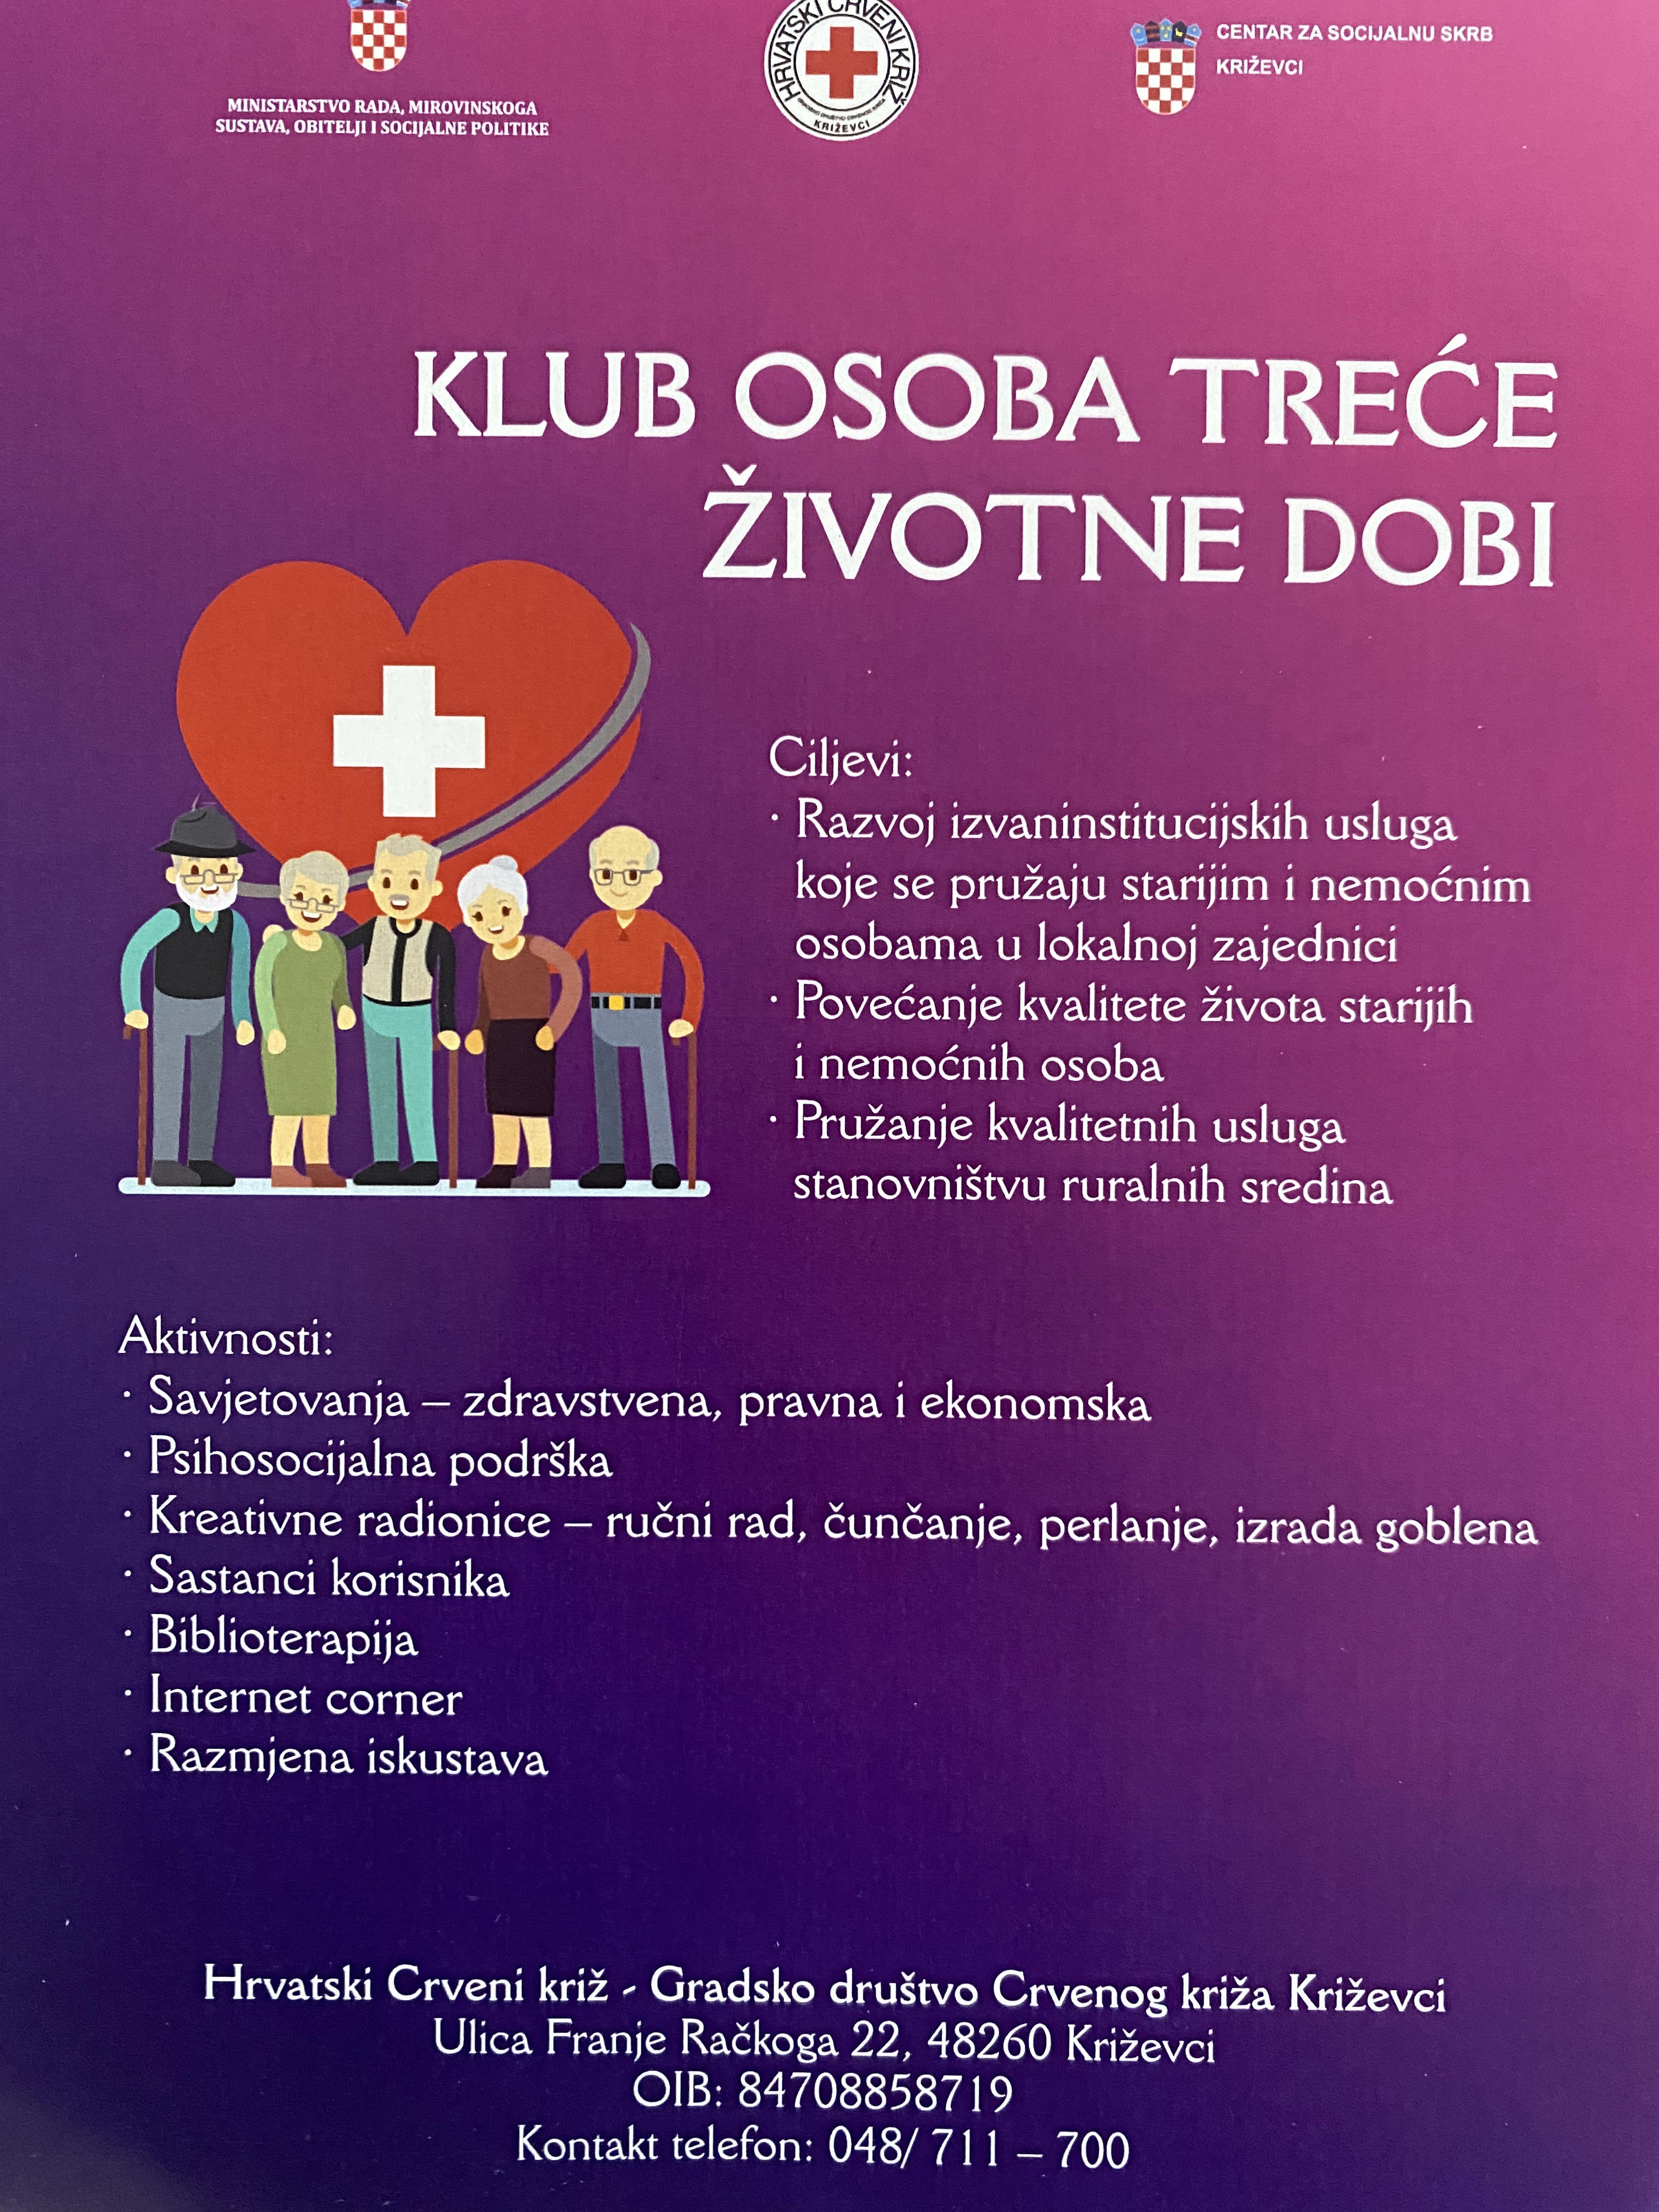 Popularne web stranice za upoznavanje Križevci Hrvatska